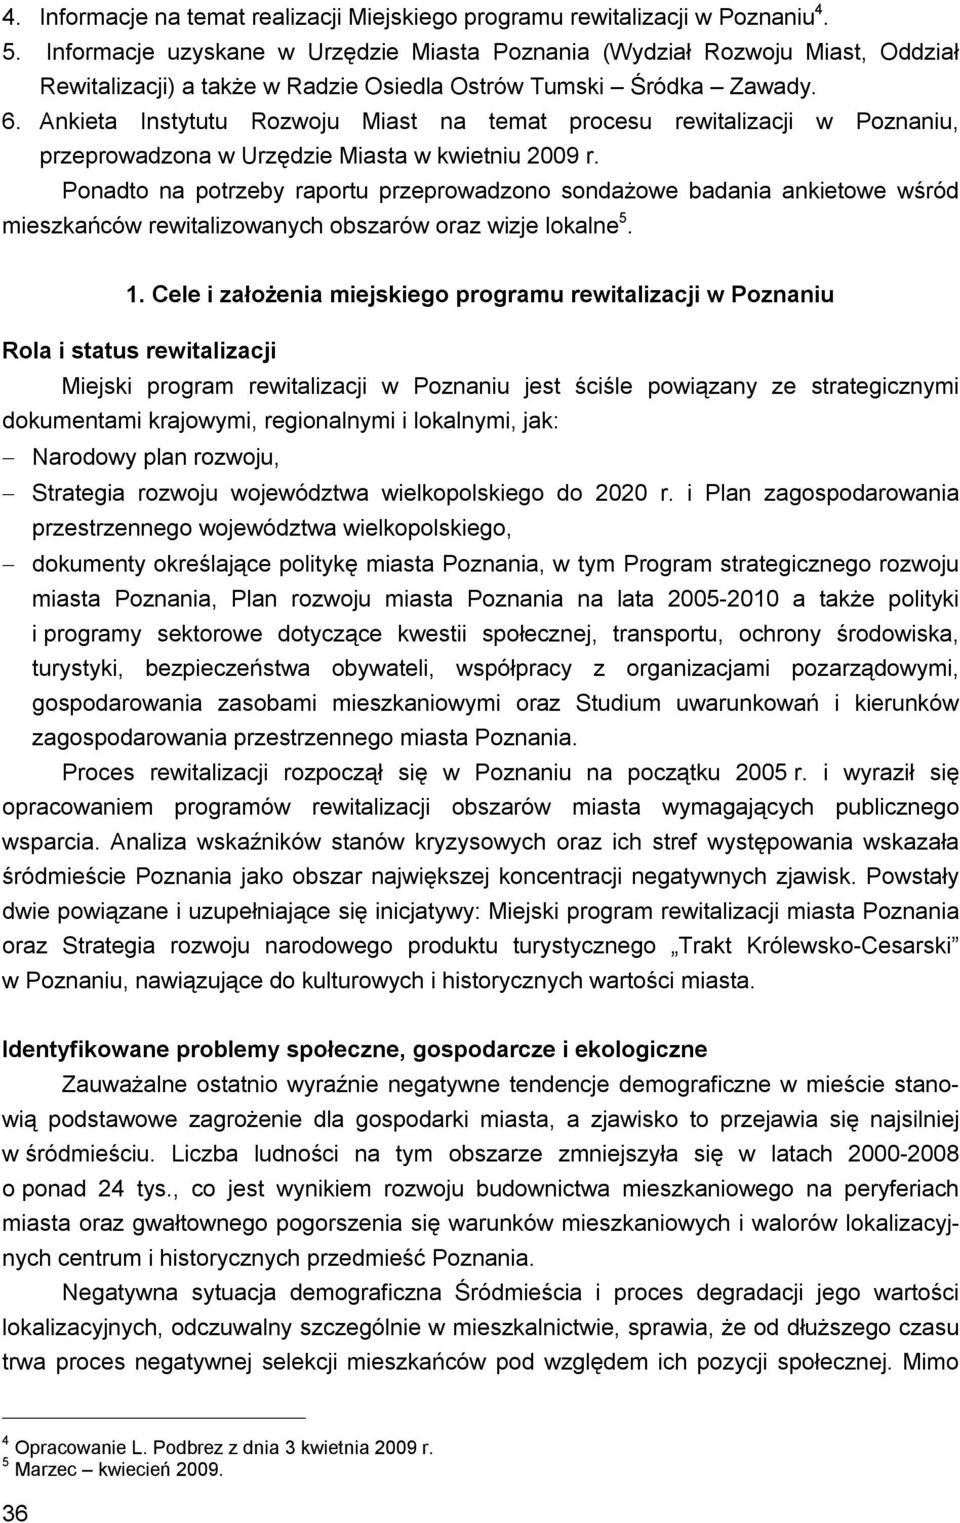 Ankieta Instytutu Rozwoju Miast na temat procesu rewitalizacji w Poznaniu, przeprowadzona w Urzędzie Miasta w kwietniu 2009 r.